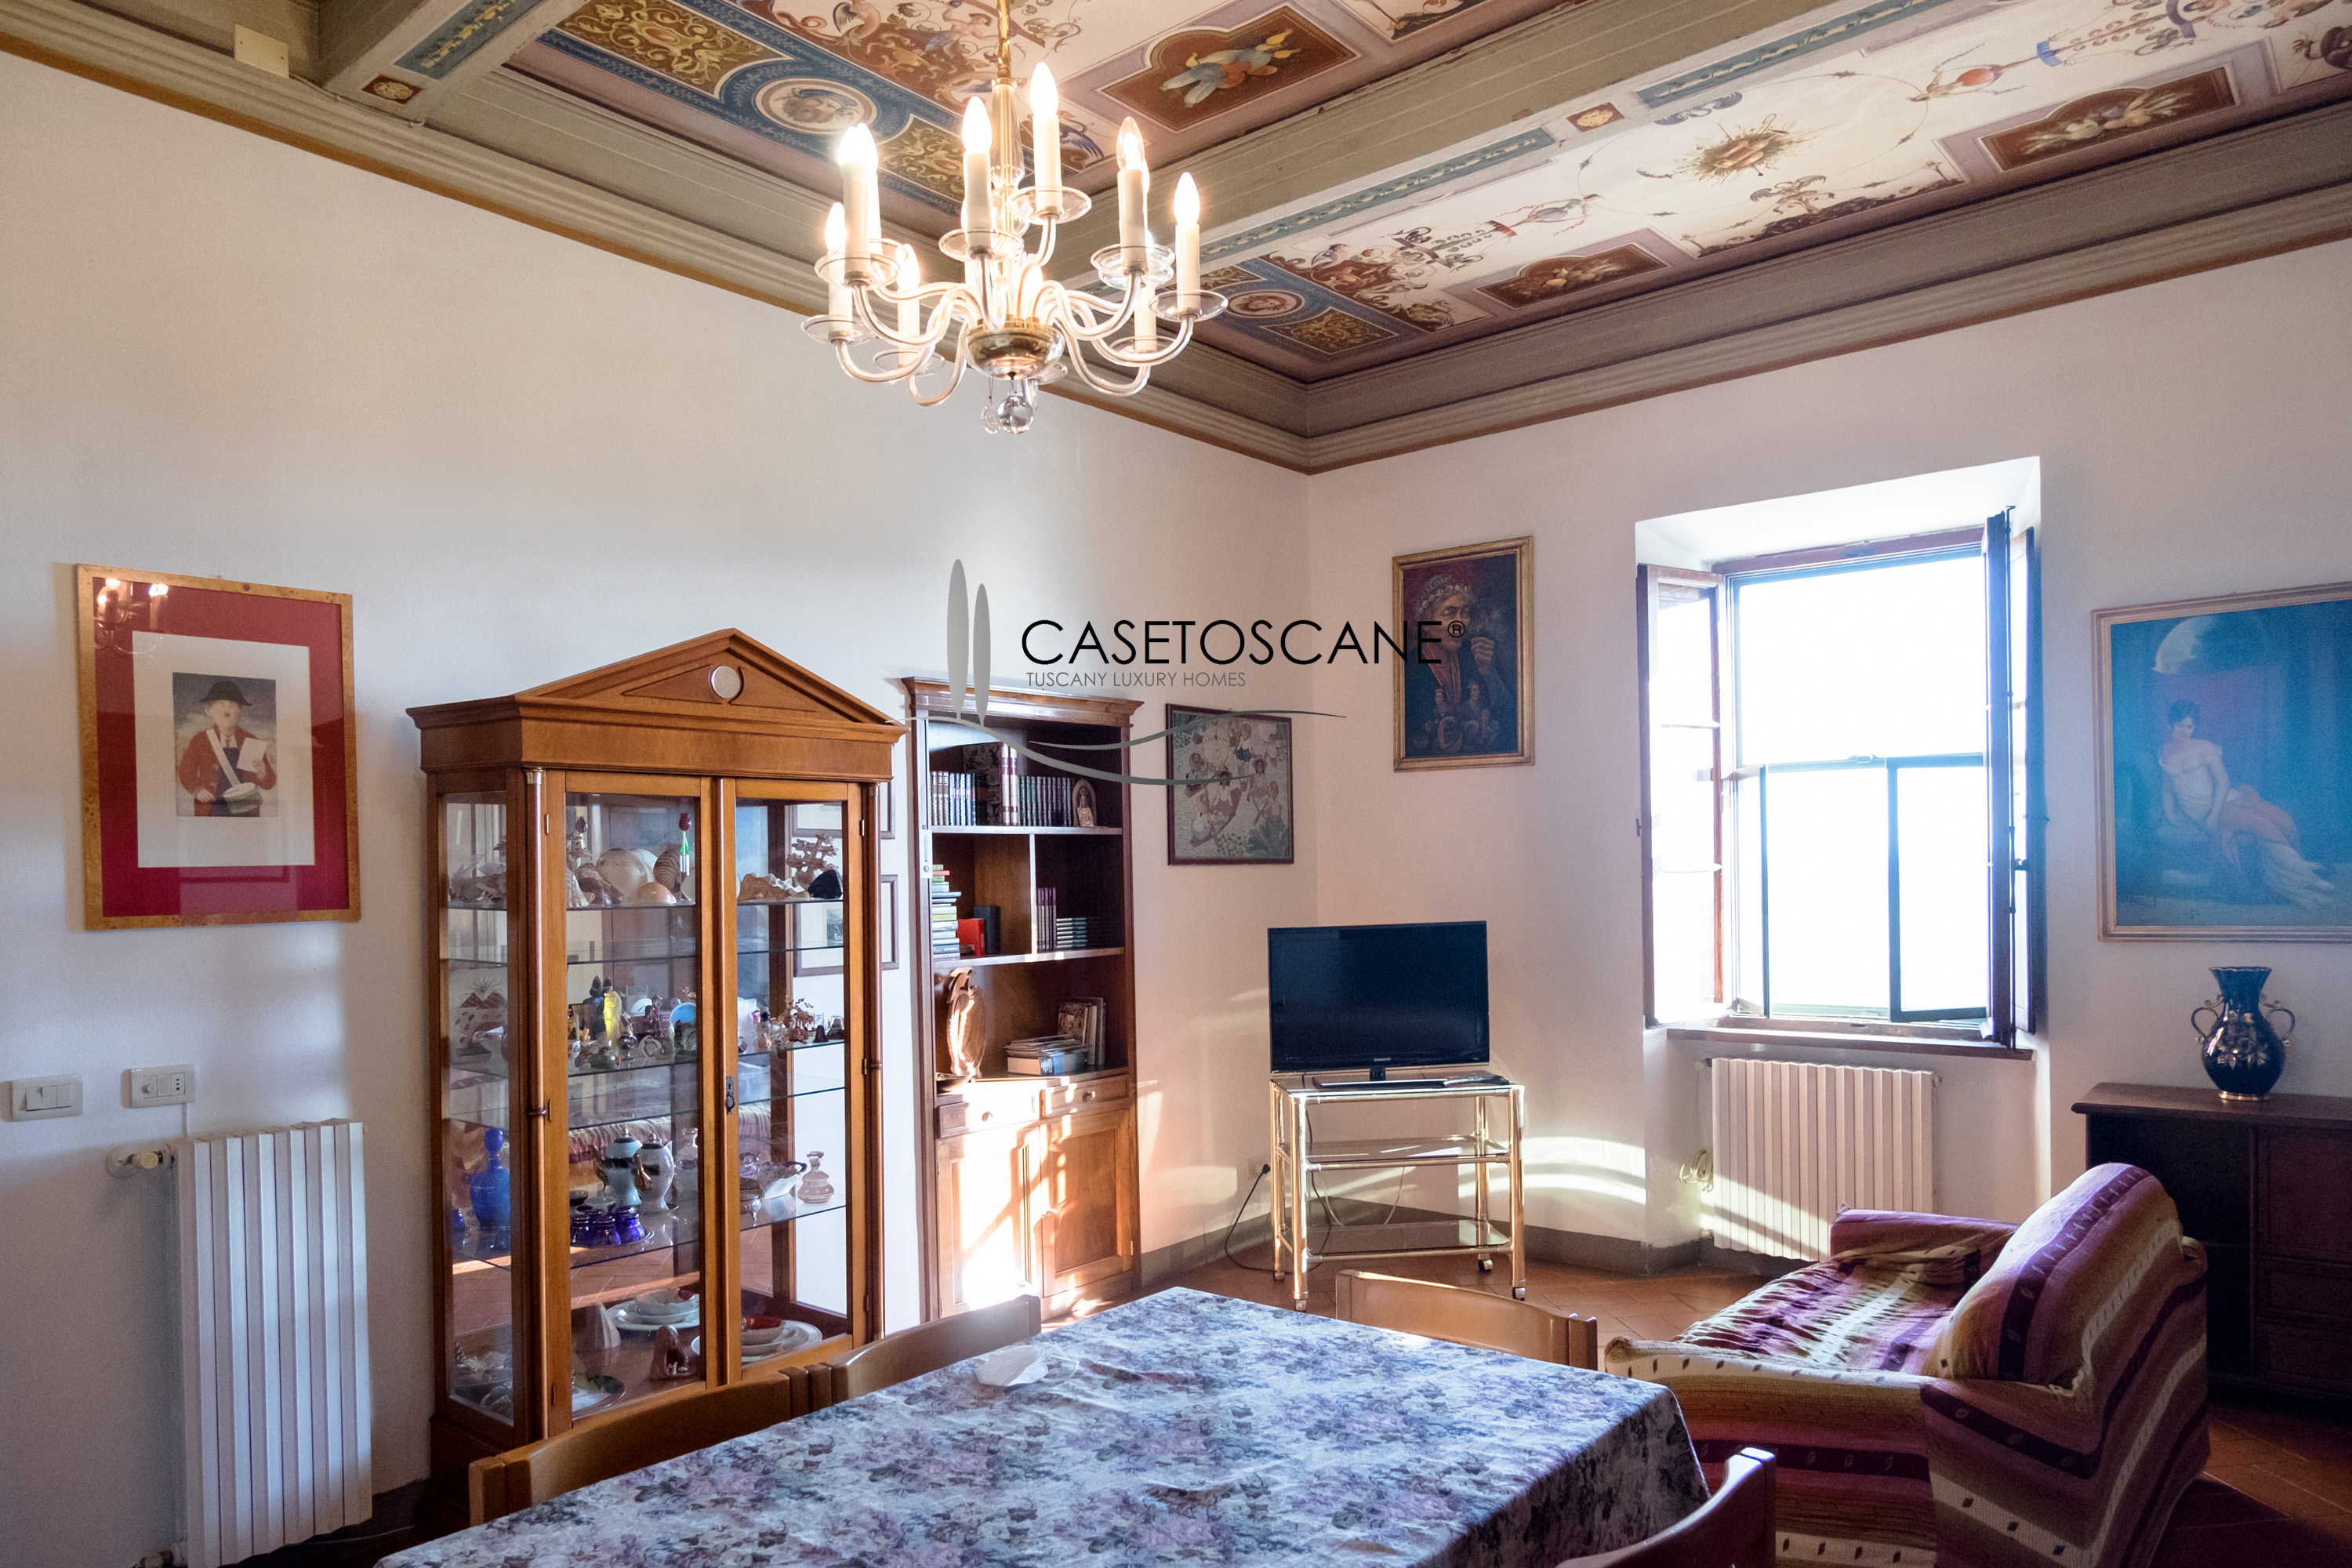 3088 - Bellissimo appartamento nel centro storico di Lucignano (AR), superficie mq.80, soffitti affrescati, 2°P con ascensore.